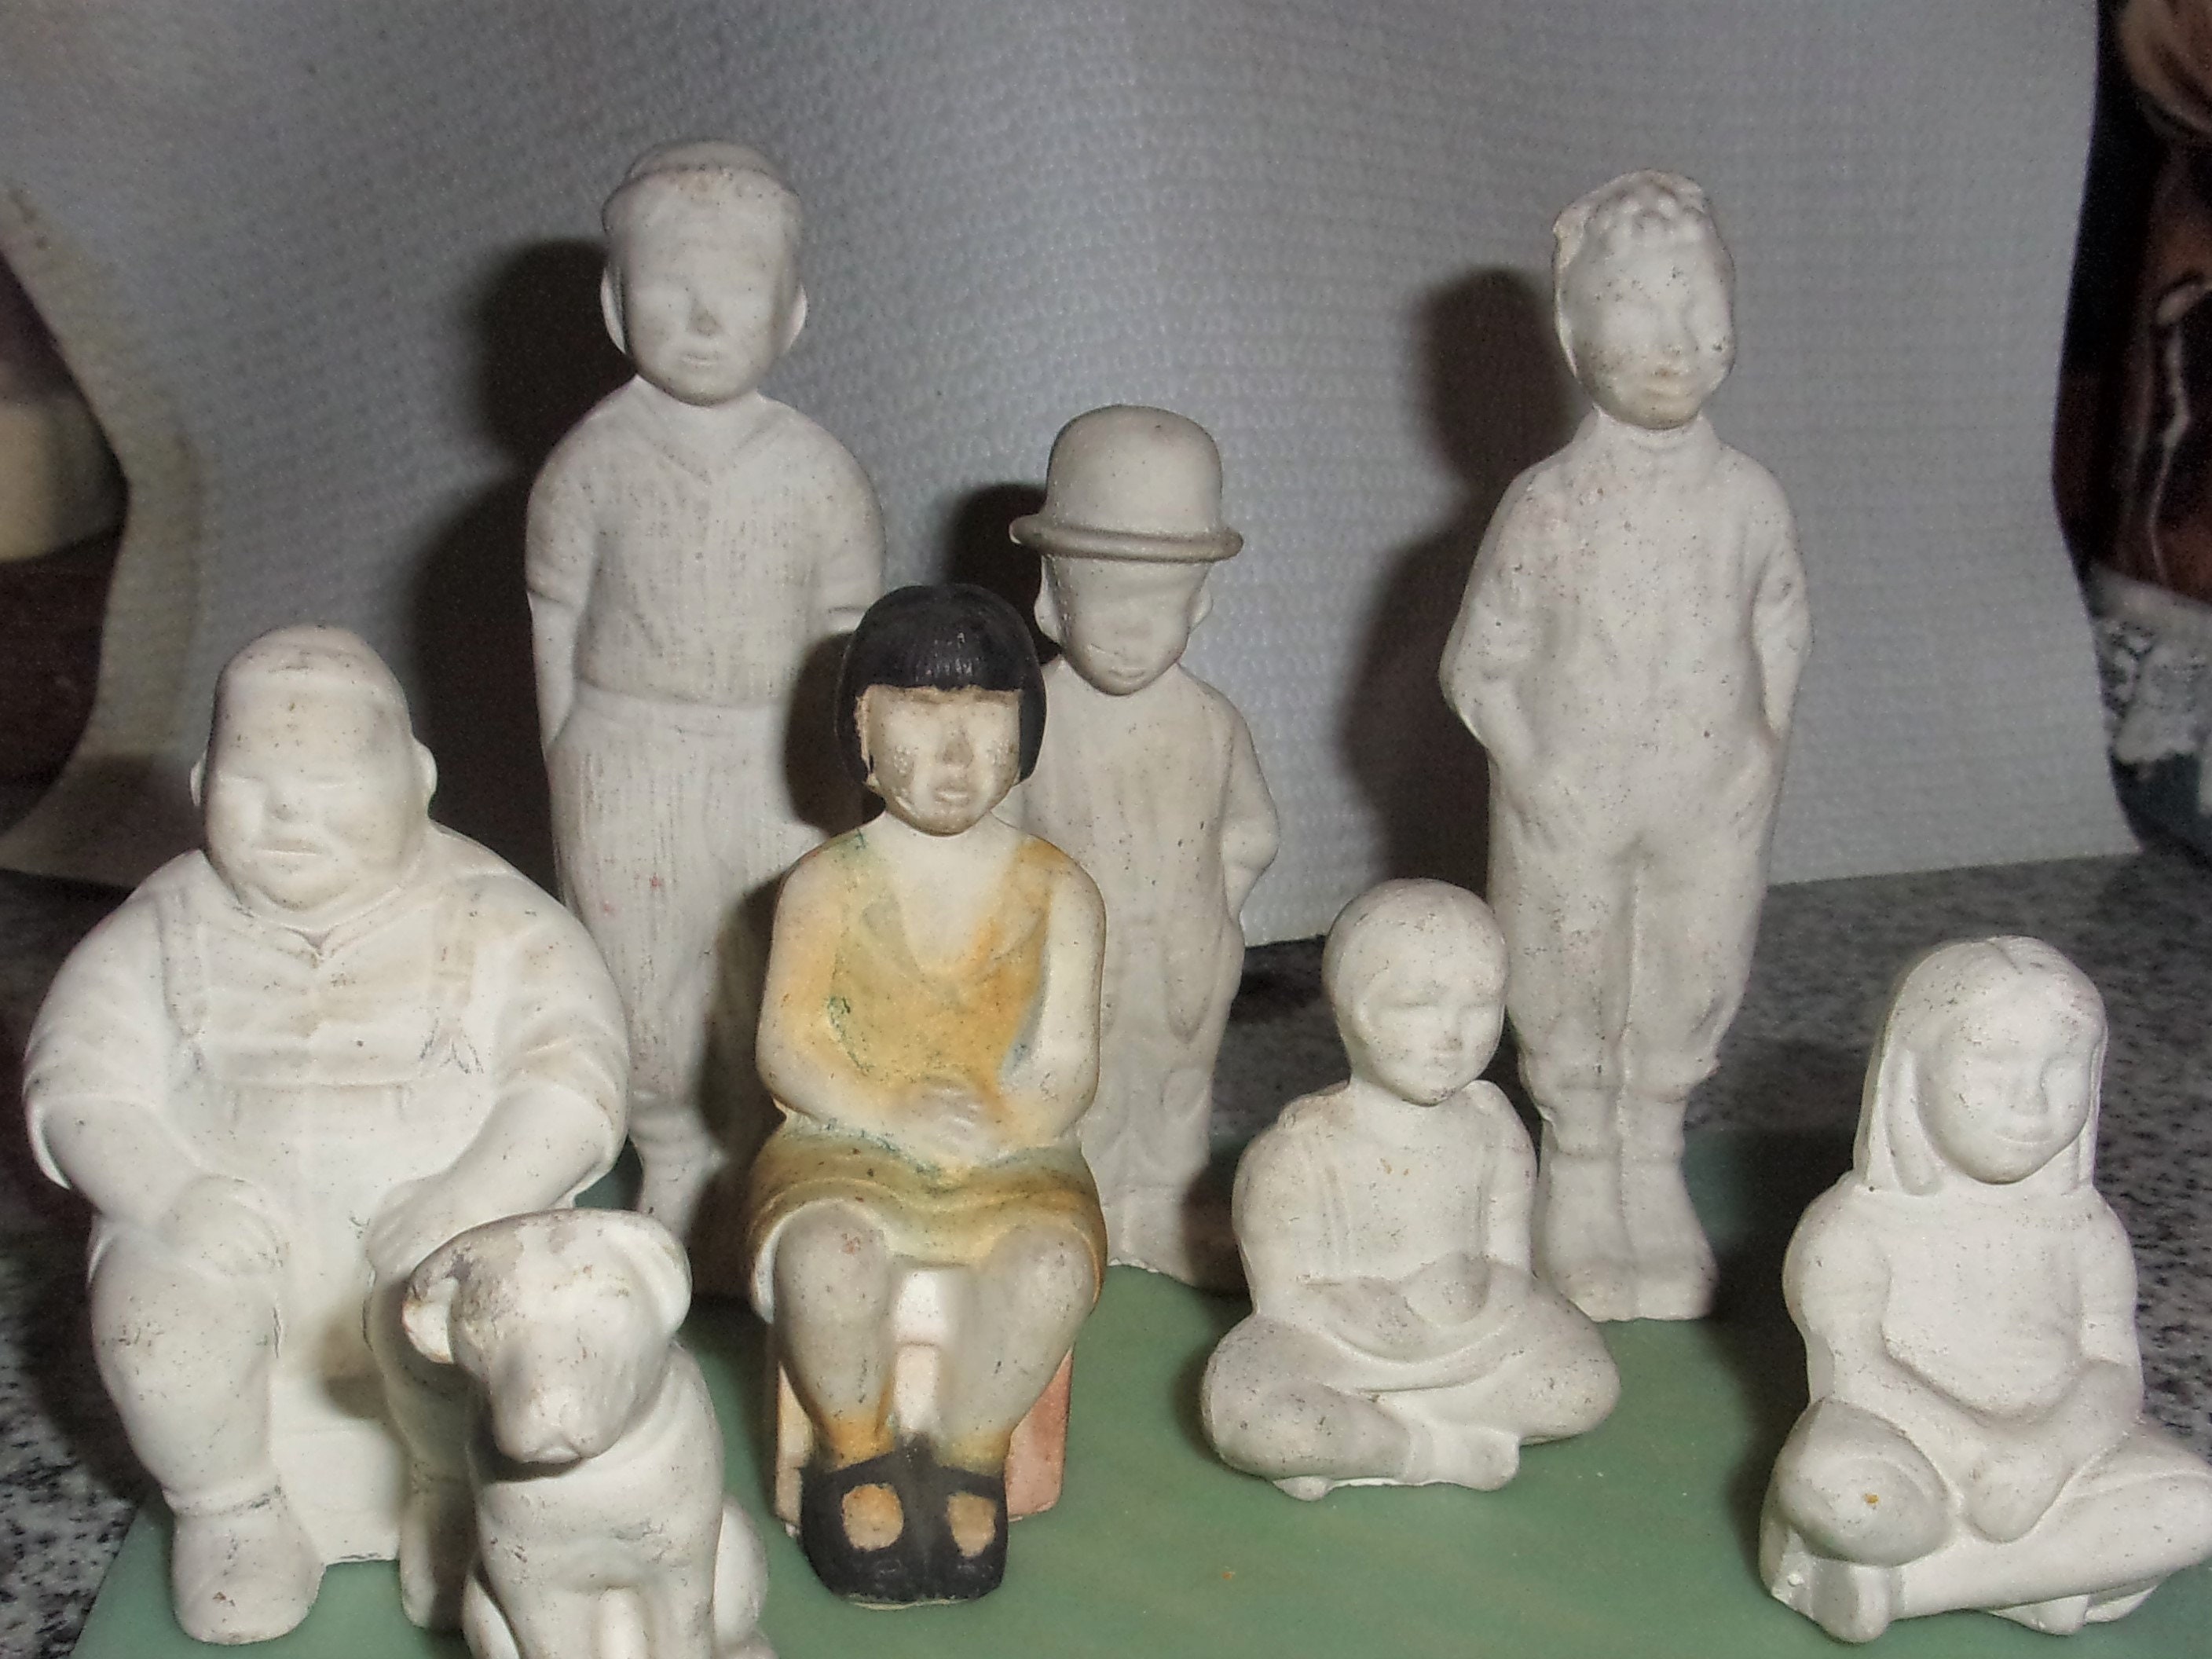 ANTIQUE 1920'S LITTLE Rascals Bisque Paintable Figurines Our Gang 12 Piece  Set $599.99 - PicClick